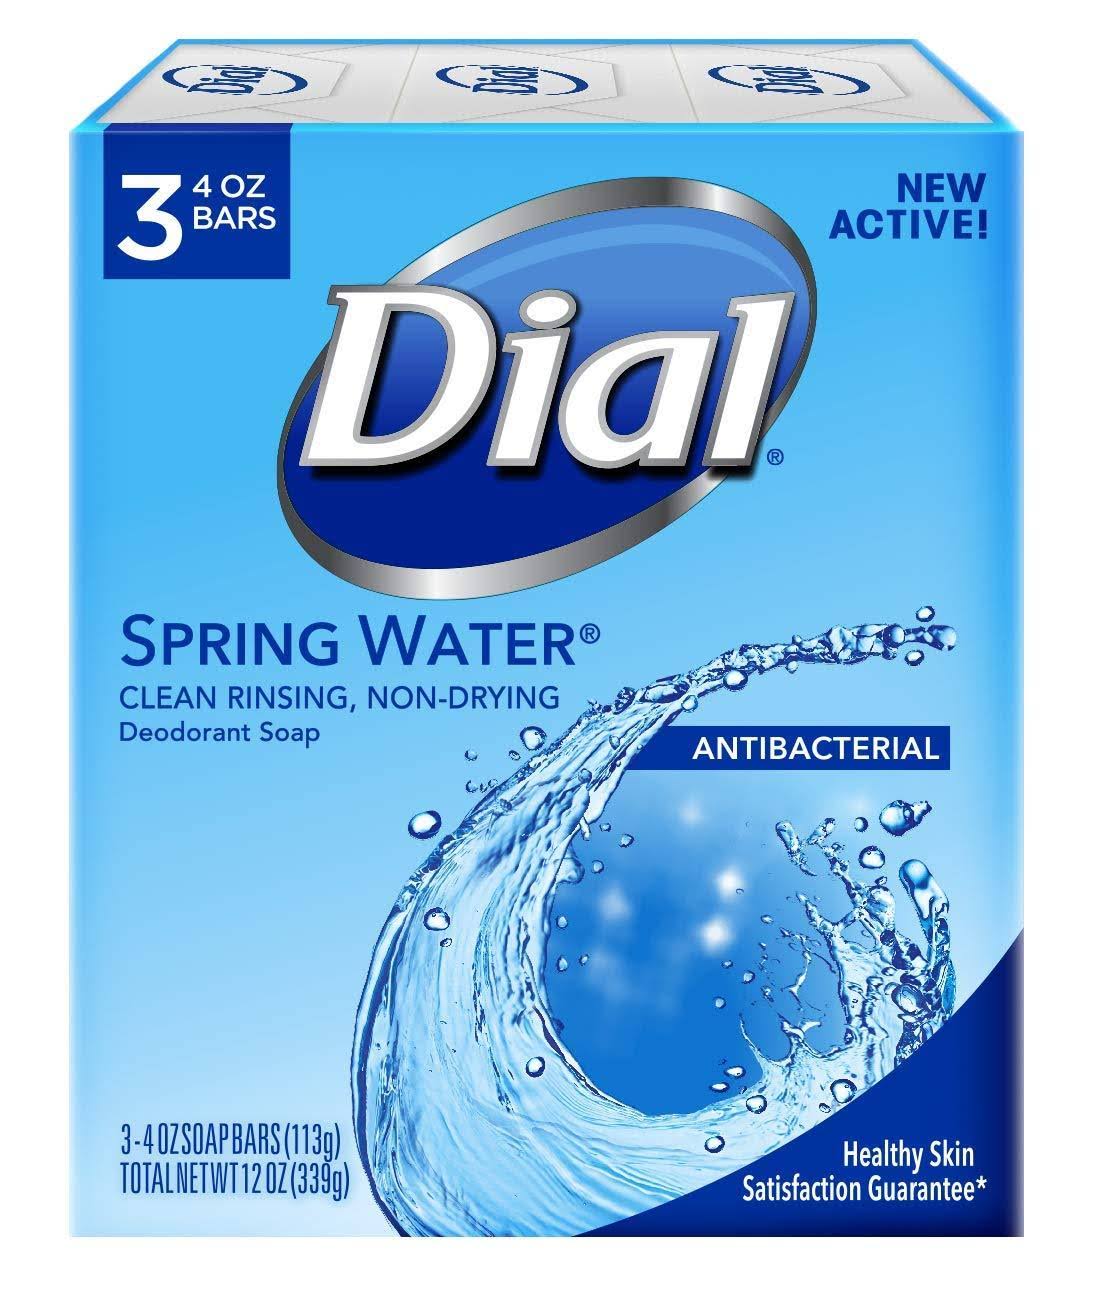 Dial Antibacterial Deodorant Soap - 3 Bars, Spring Water, 339g